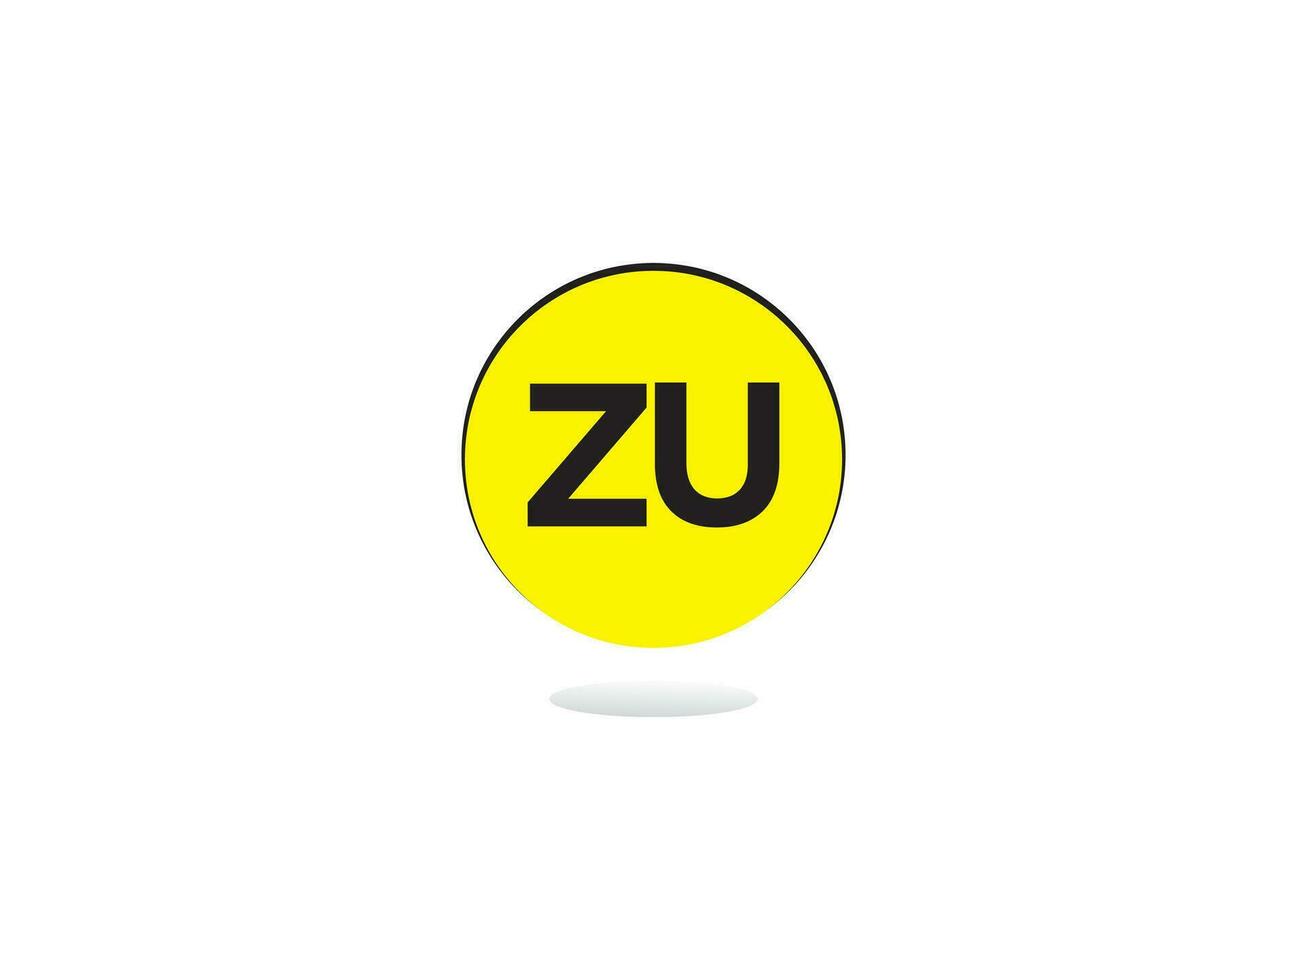 monograma zu logo icono, inicial zu uz lujo circulo logo letra diseño vector